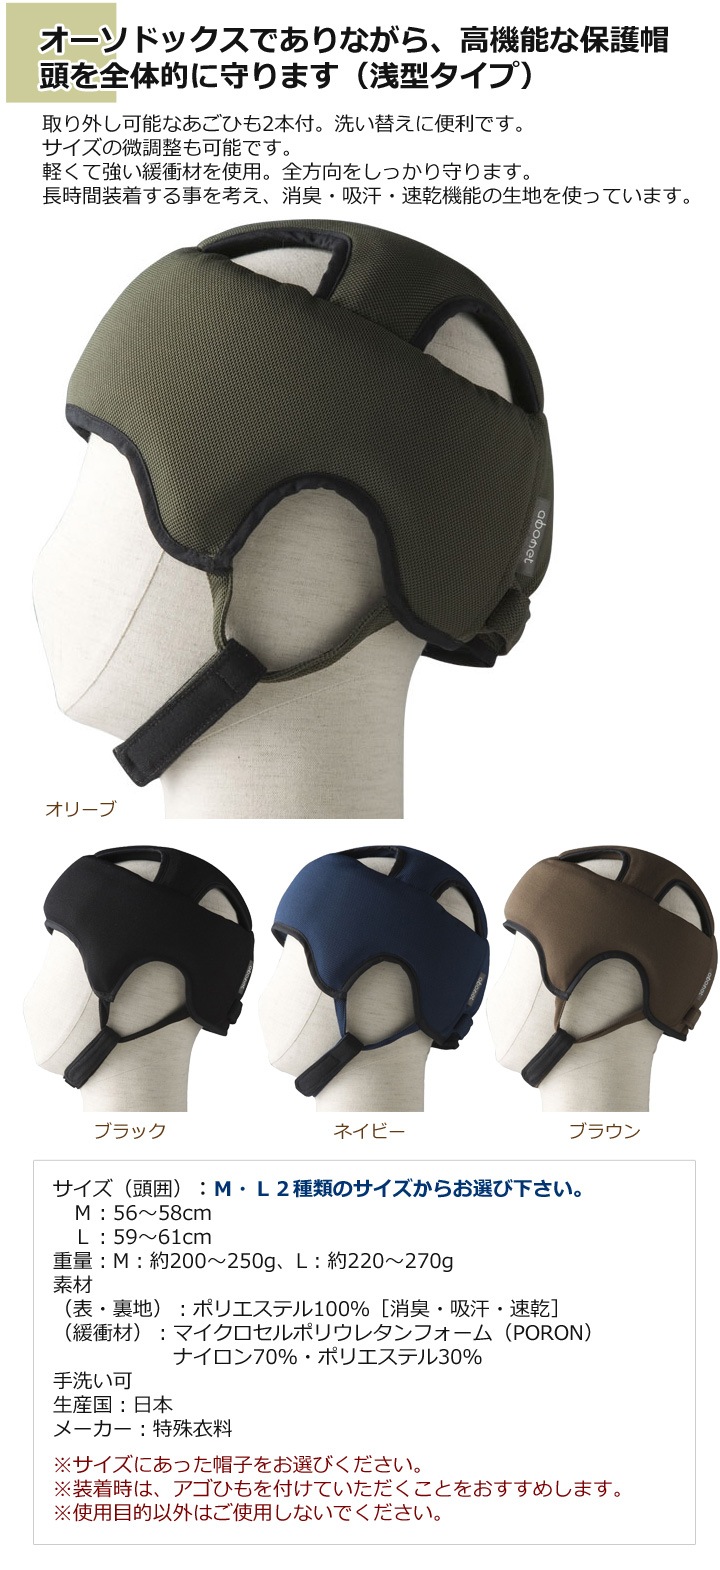 オーソドックスでありながら、高機能な保護帽。
頭を全体的に守ります（浅型タイプ）。